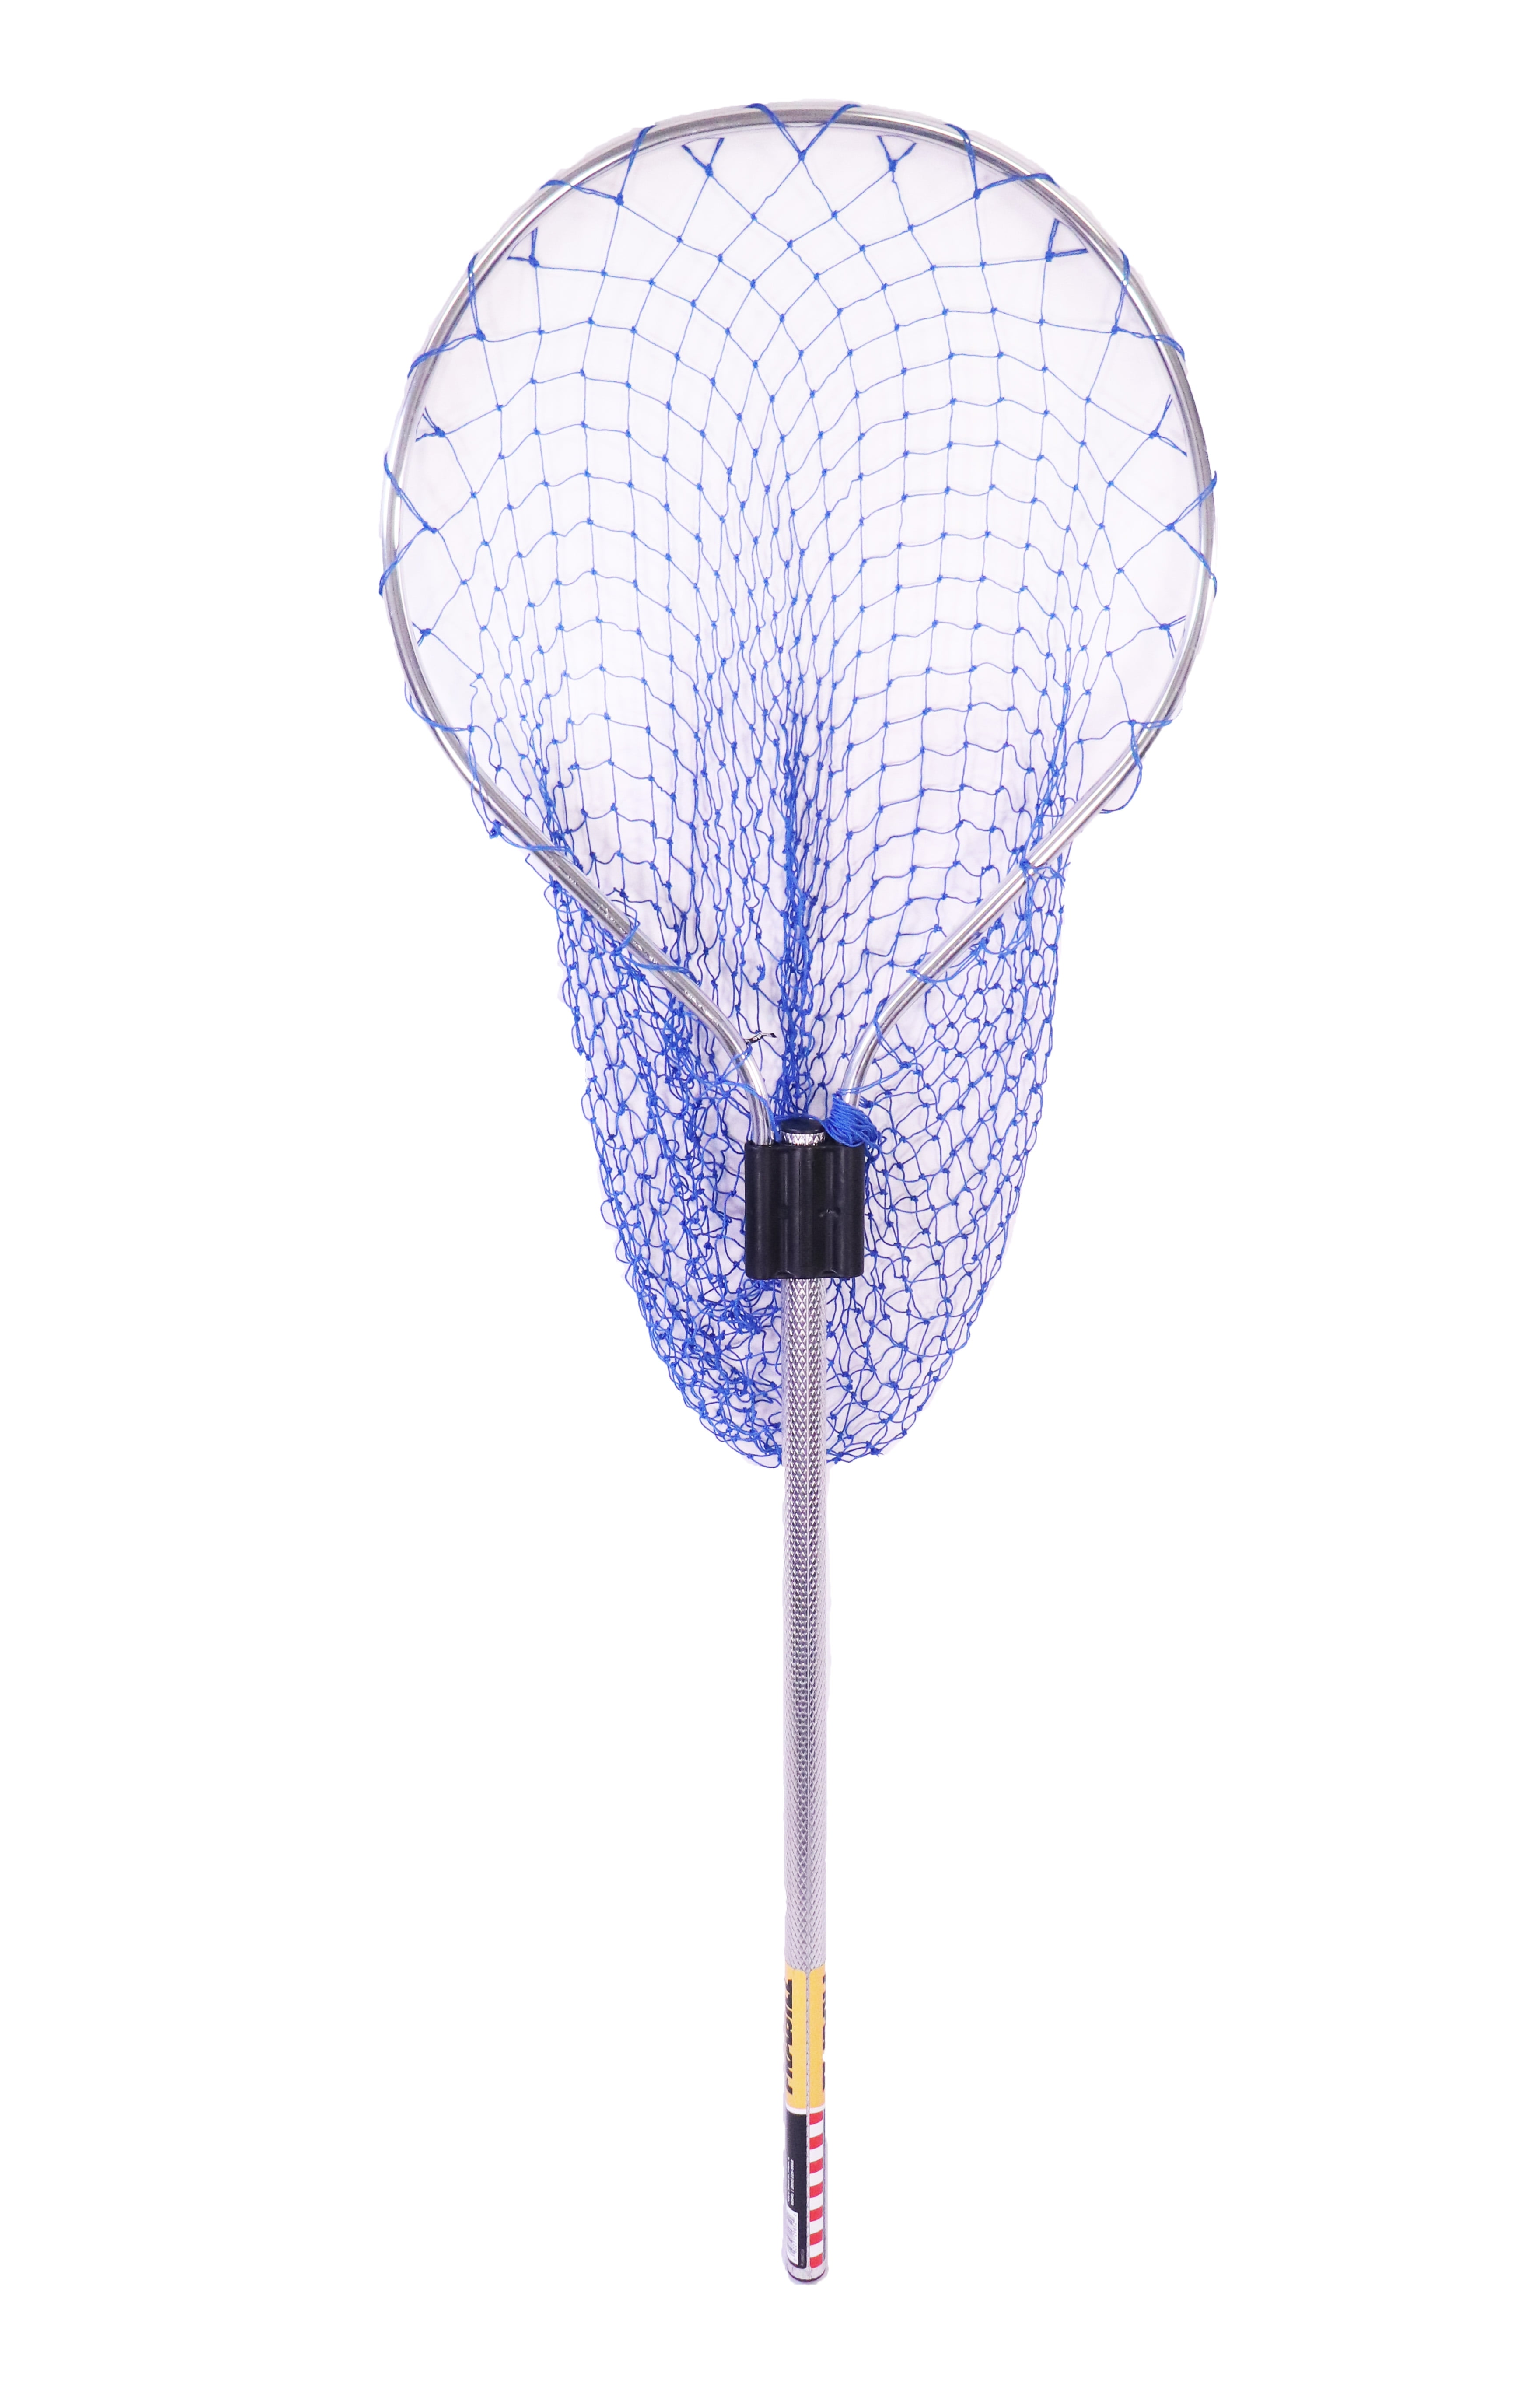 Frabill Sportsman Series Vinylon Landing Fishing Net, Diamond-Embossed Handle, Size: Assorted